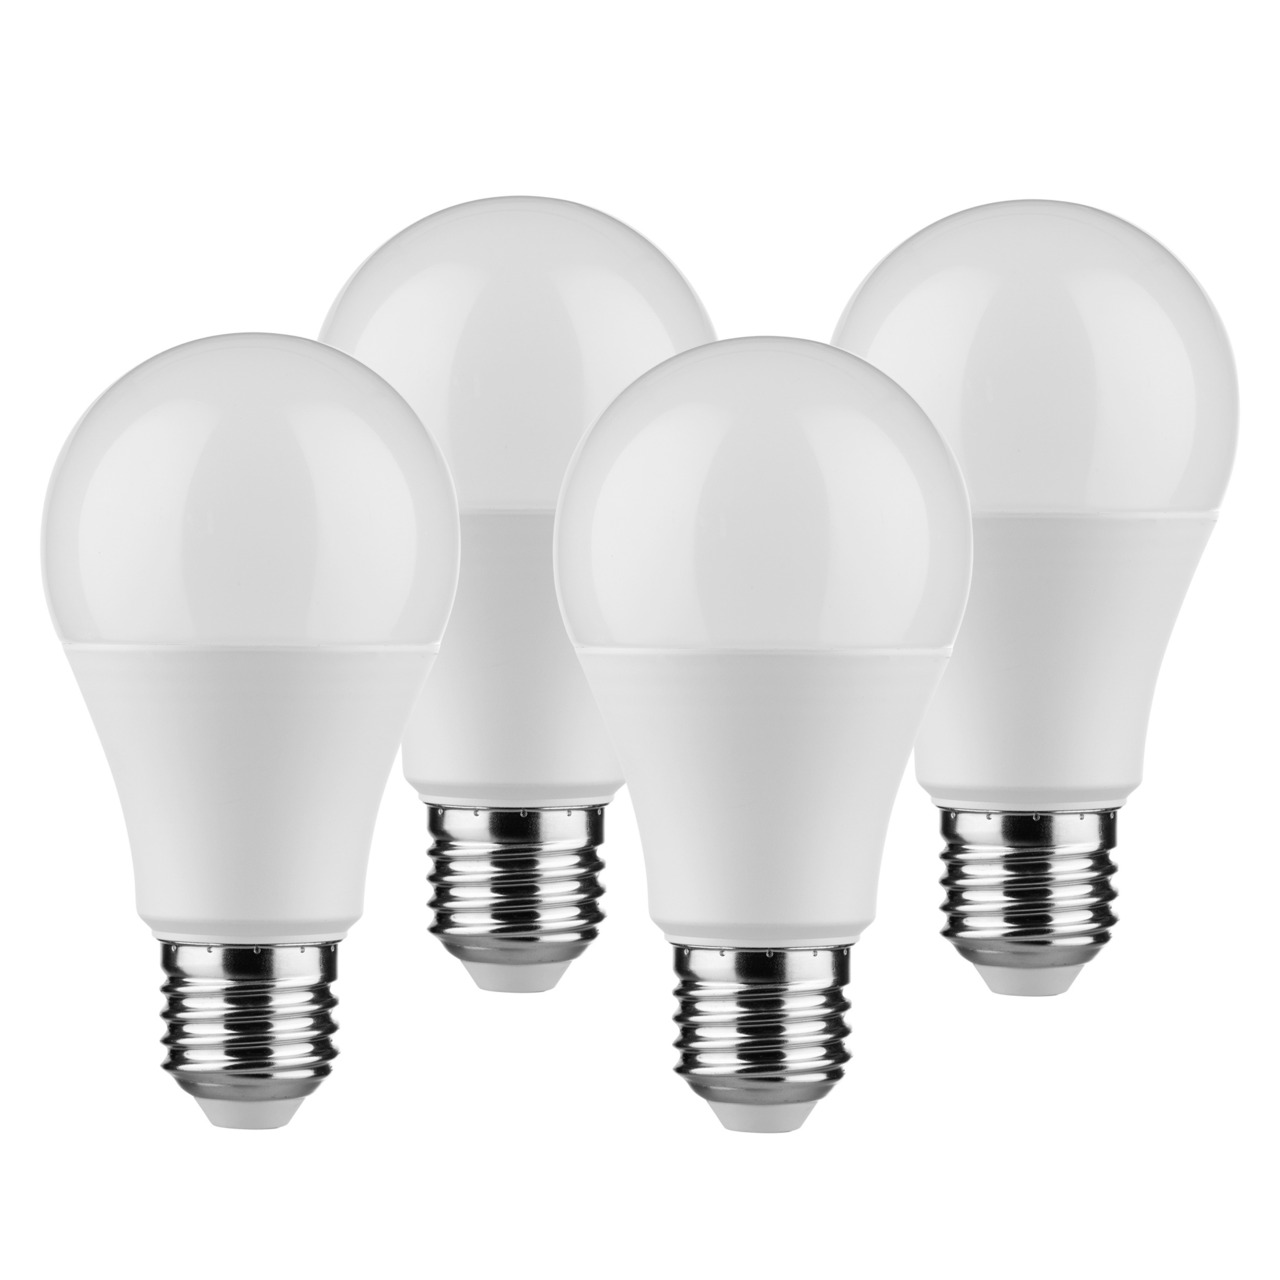 Müller Licht 4er Pack 9-W-LED-Lampen E27- warmweiss- 806 lm